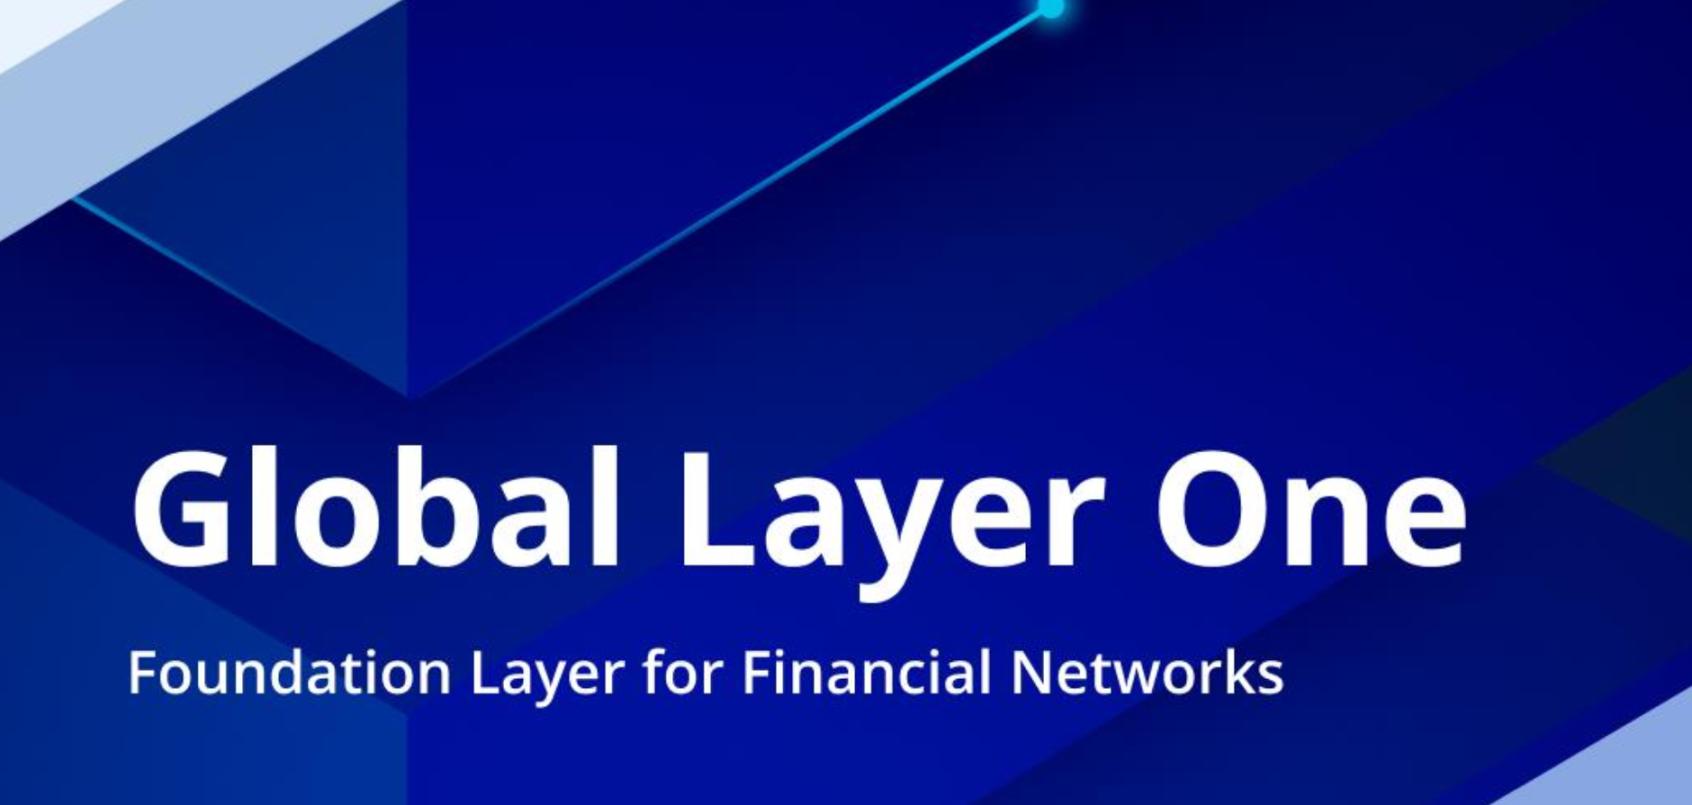 万字解读新加坡金管局《全球Layer 1 - 金融网络的基础层》白皮书